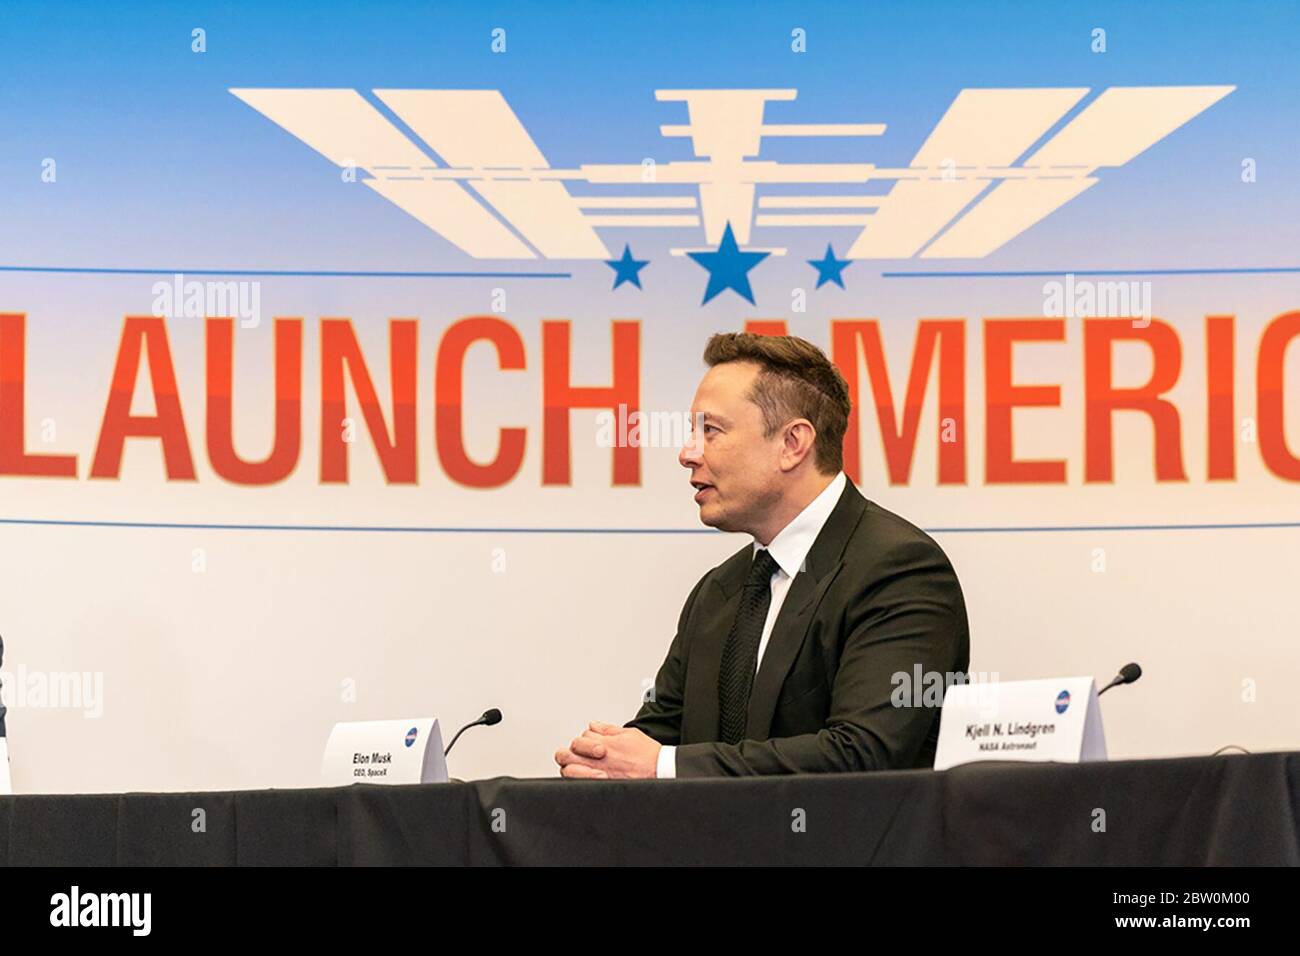 Elon Musk, fundador de Space Exploration Technologies Corp.- SpaceX, se une al presidente Donald J. Trump en una sesión informativa de lanzamiento para preparar el lanzamiento del cohete SpaceX Falcon 9 con el vehículo Crew Dragon el miércoles 27 de mayo de 2020, en el Centro Espacial Kennedy en Cabo Cañaveral, Florida. (EE.UU.) Foto de stock